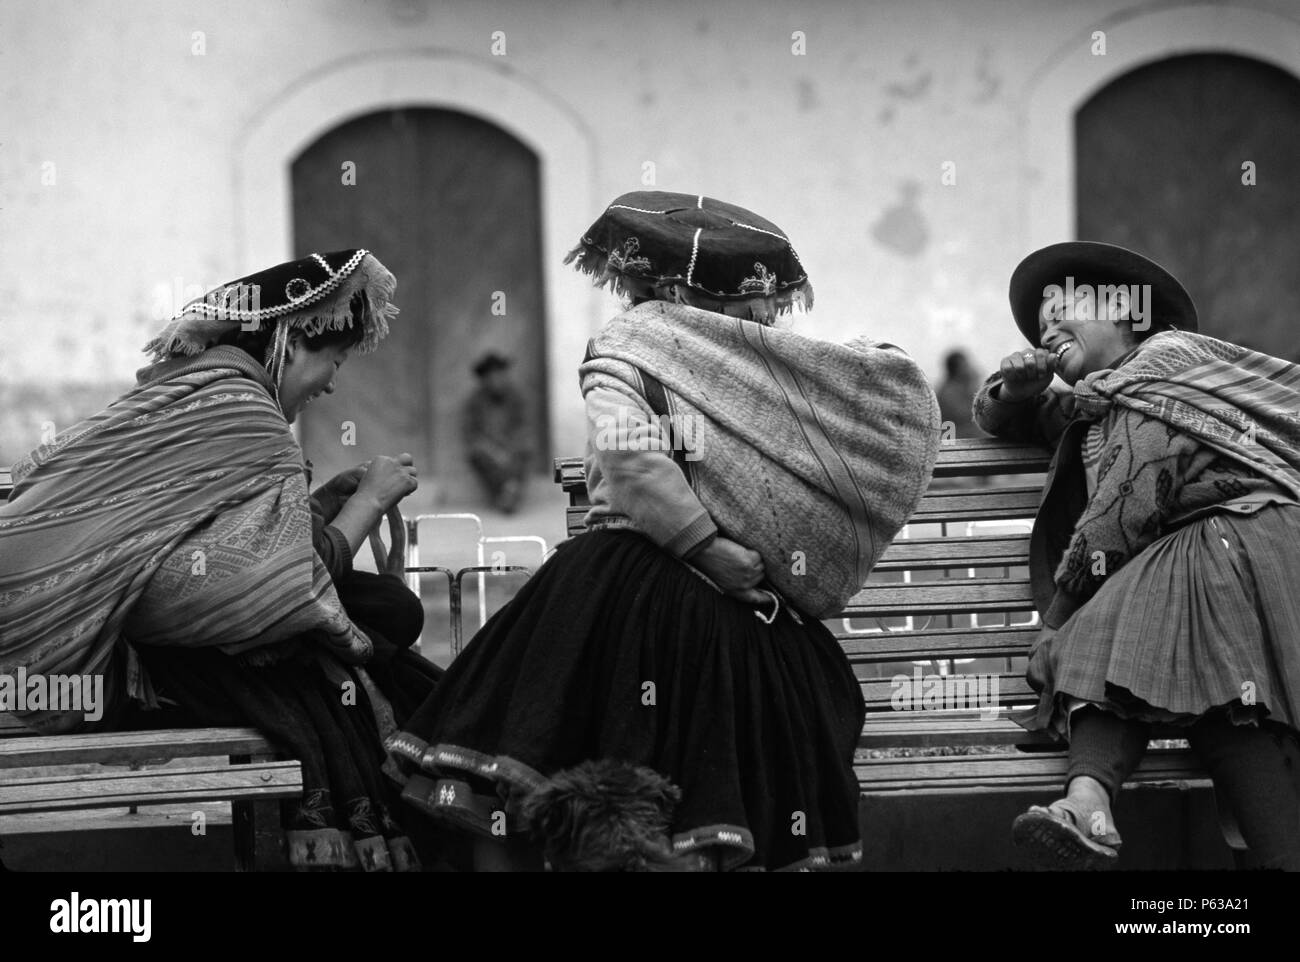 Les femmes quechua visiter dans un village rural près de Nevado Auzangate - Pérou Banque D'Images